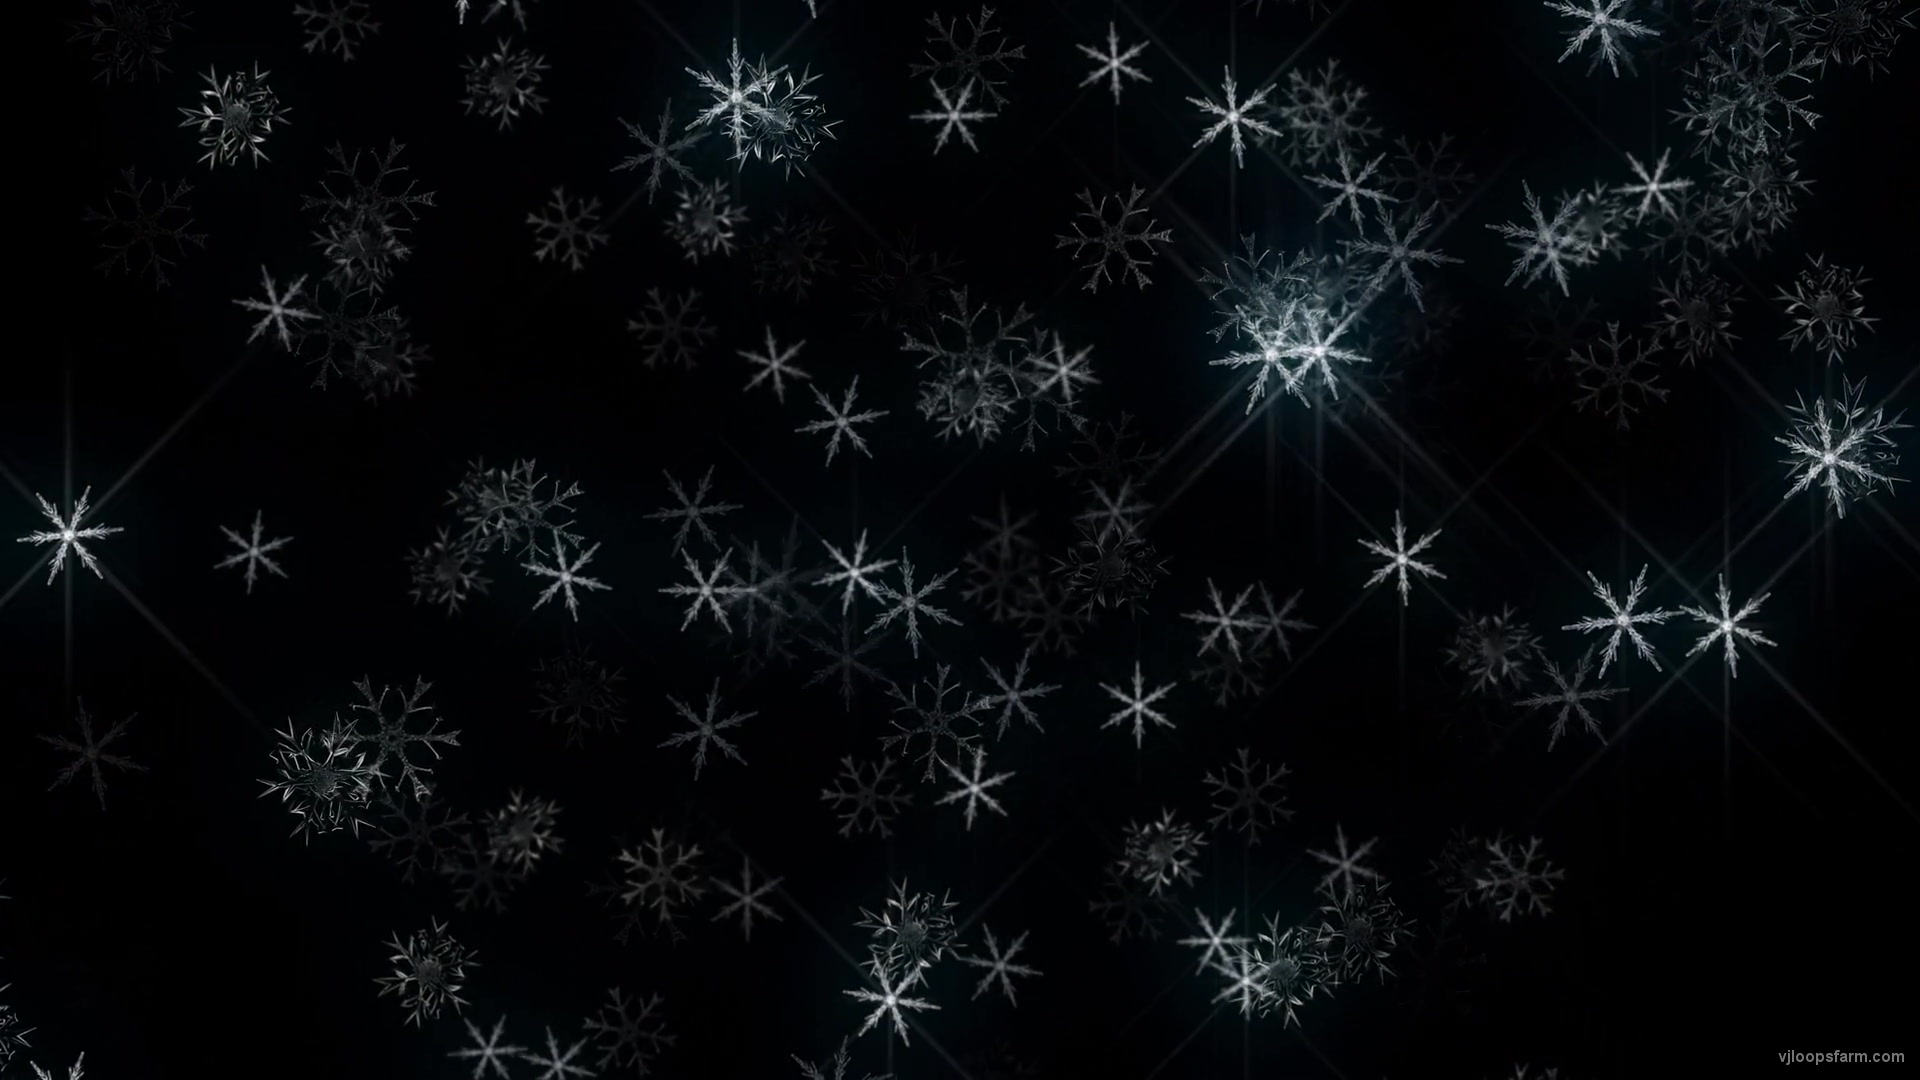 Snowlakes in BLue Lights glow Ultra HD VJ Loop